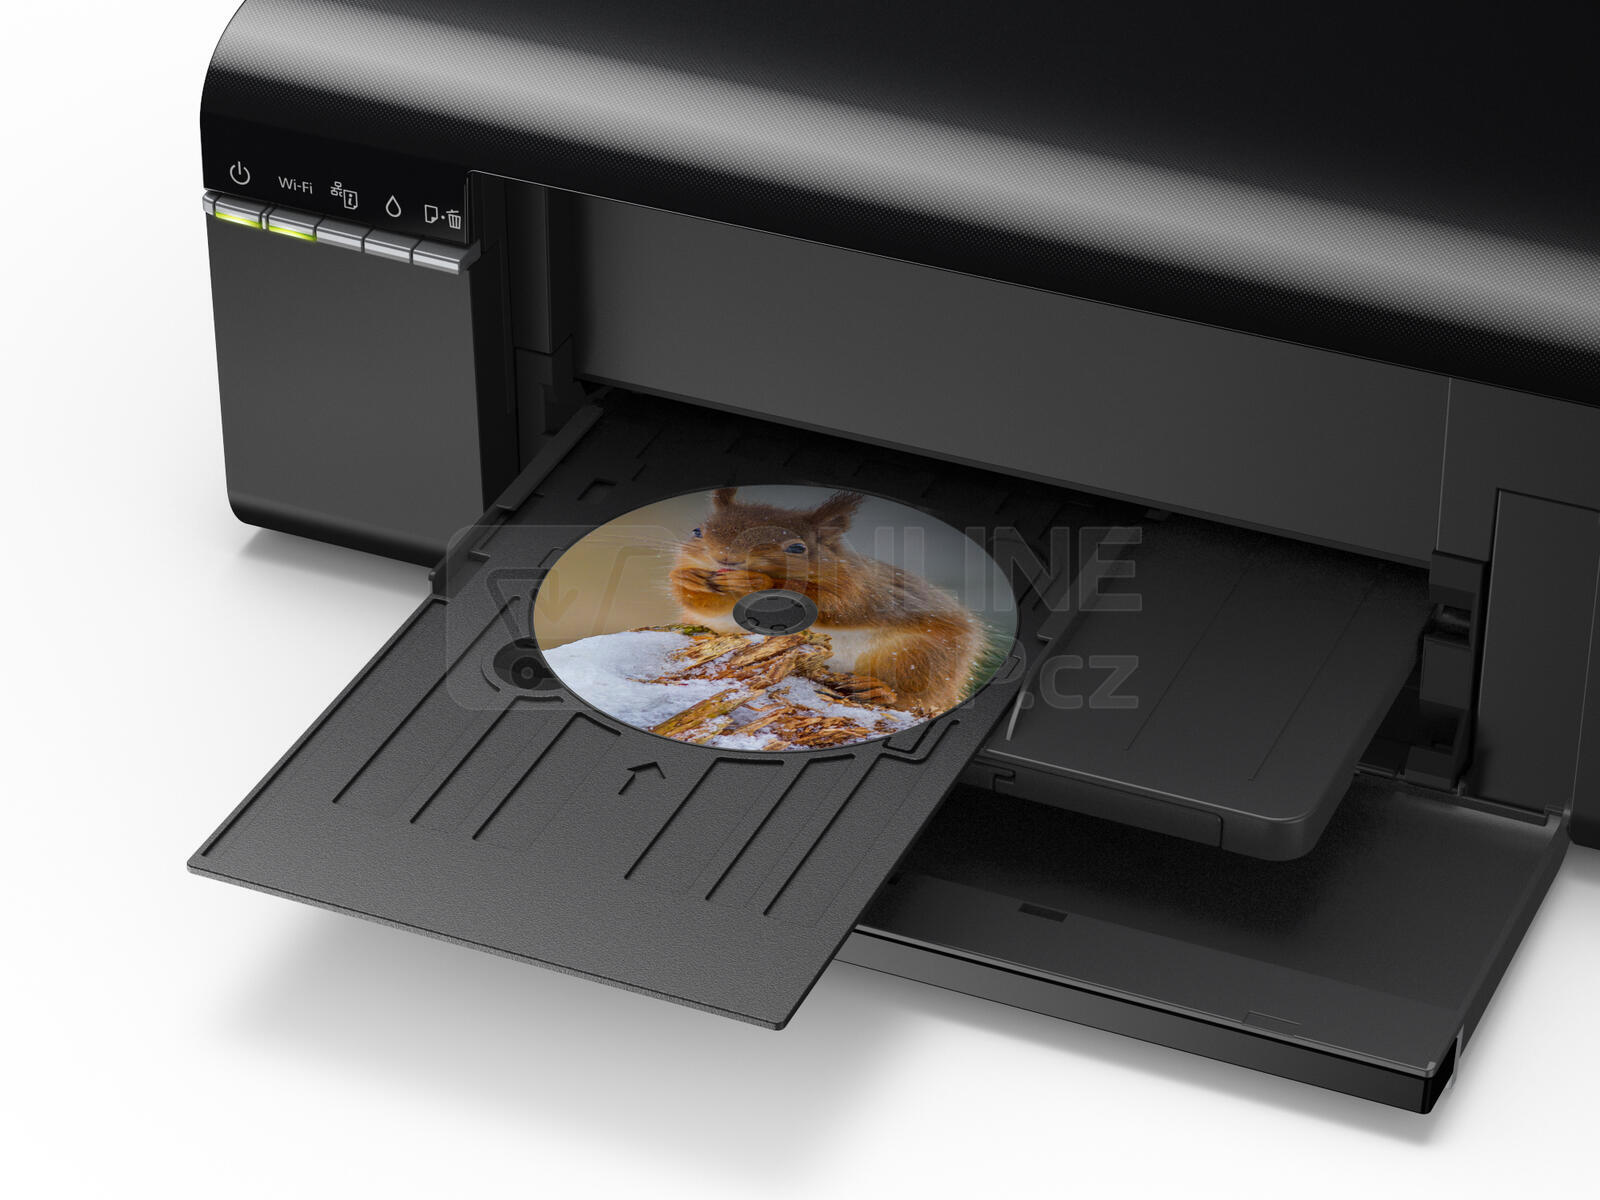 Tiskárna inkoustová Epson L805 A4, 37str./min, 38str./min, 5760 x 1440, - černá